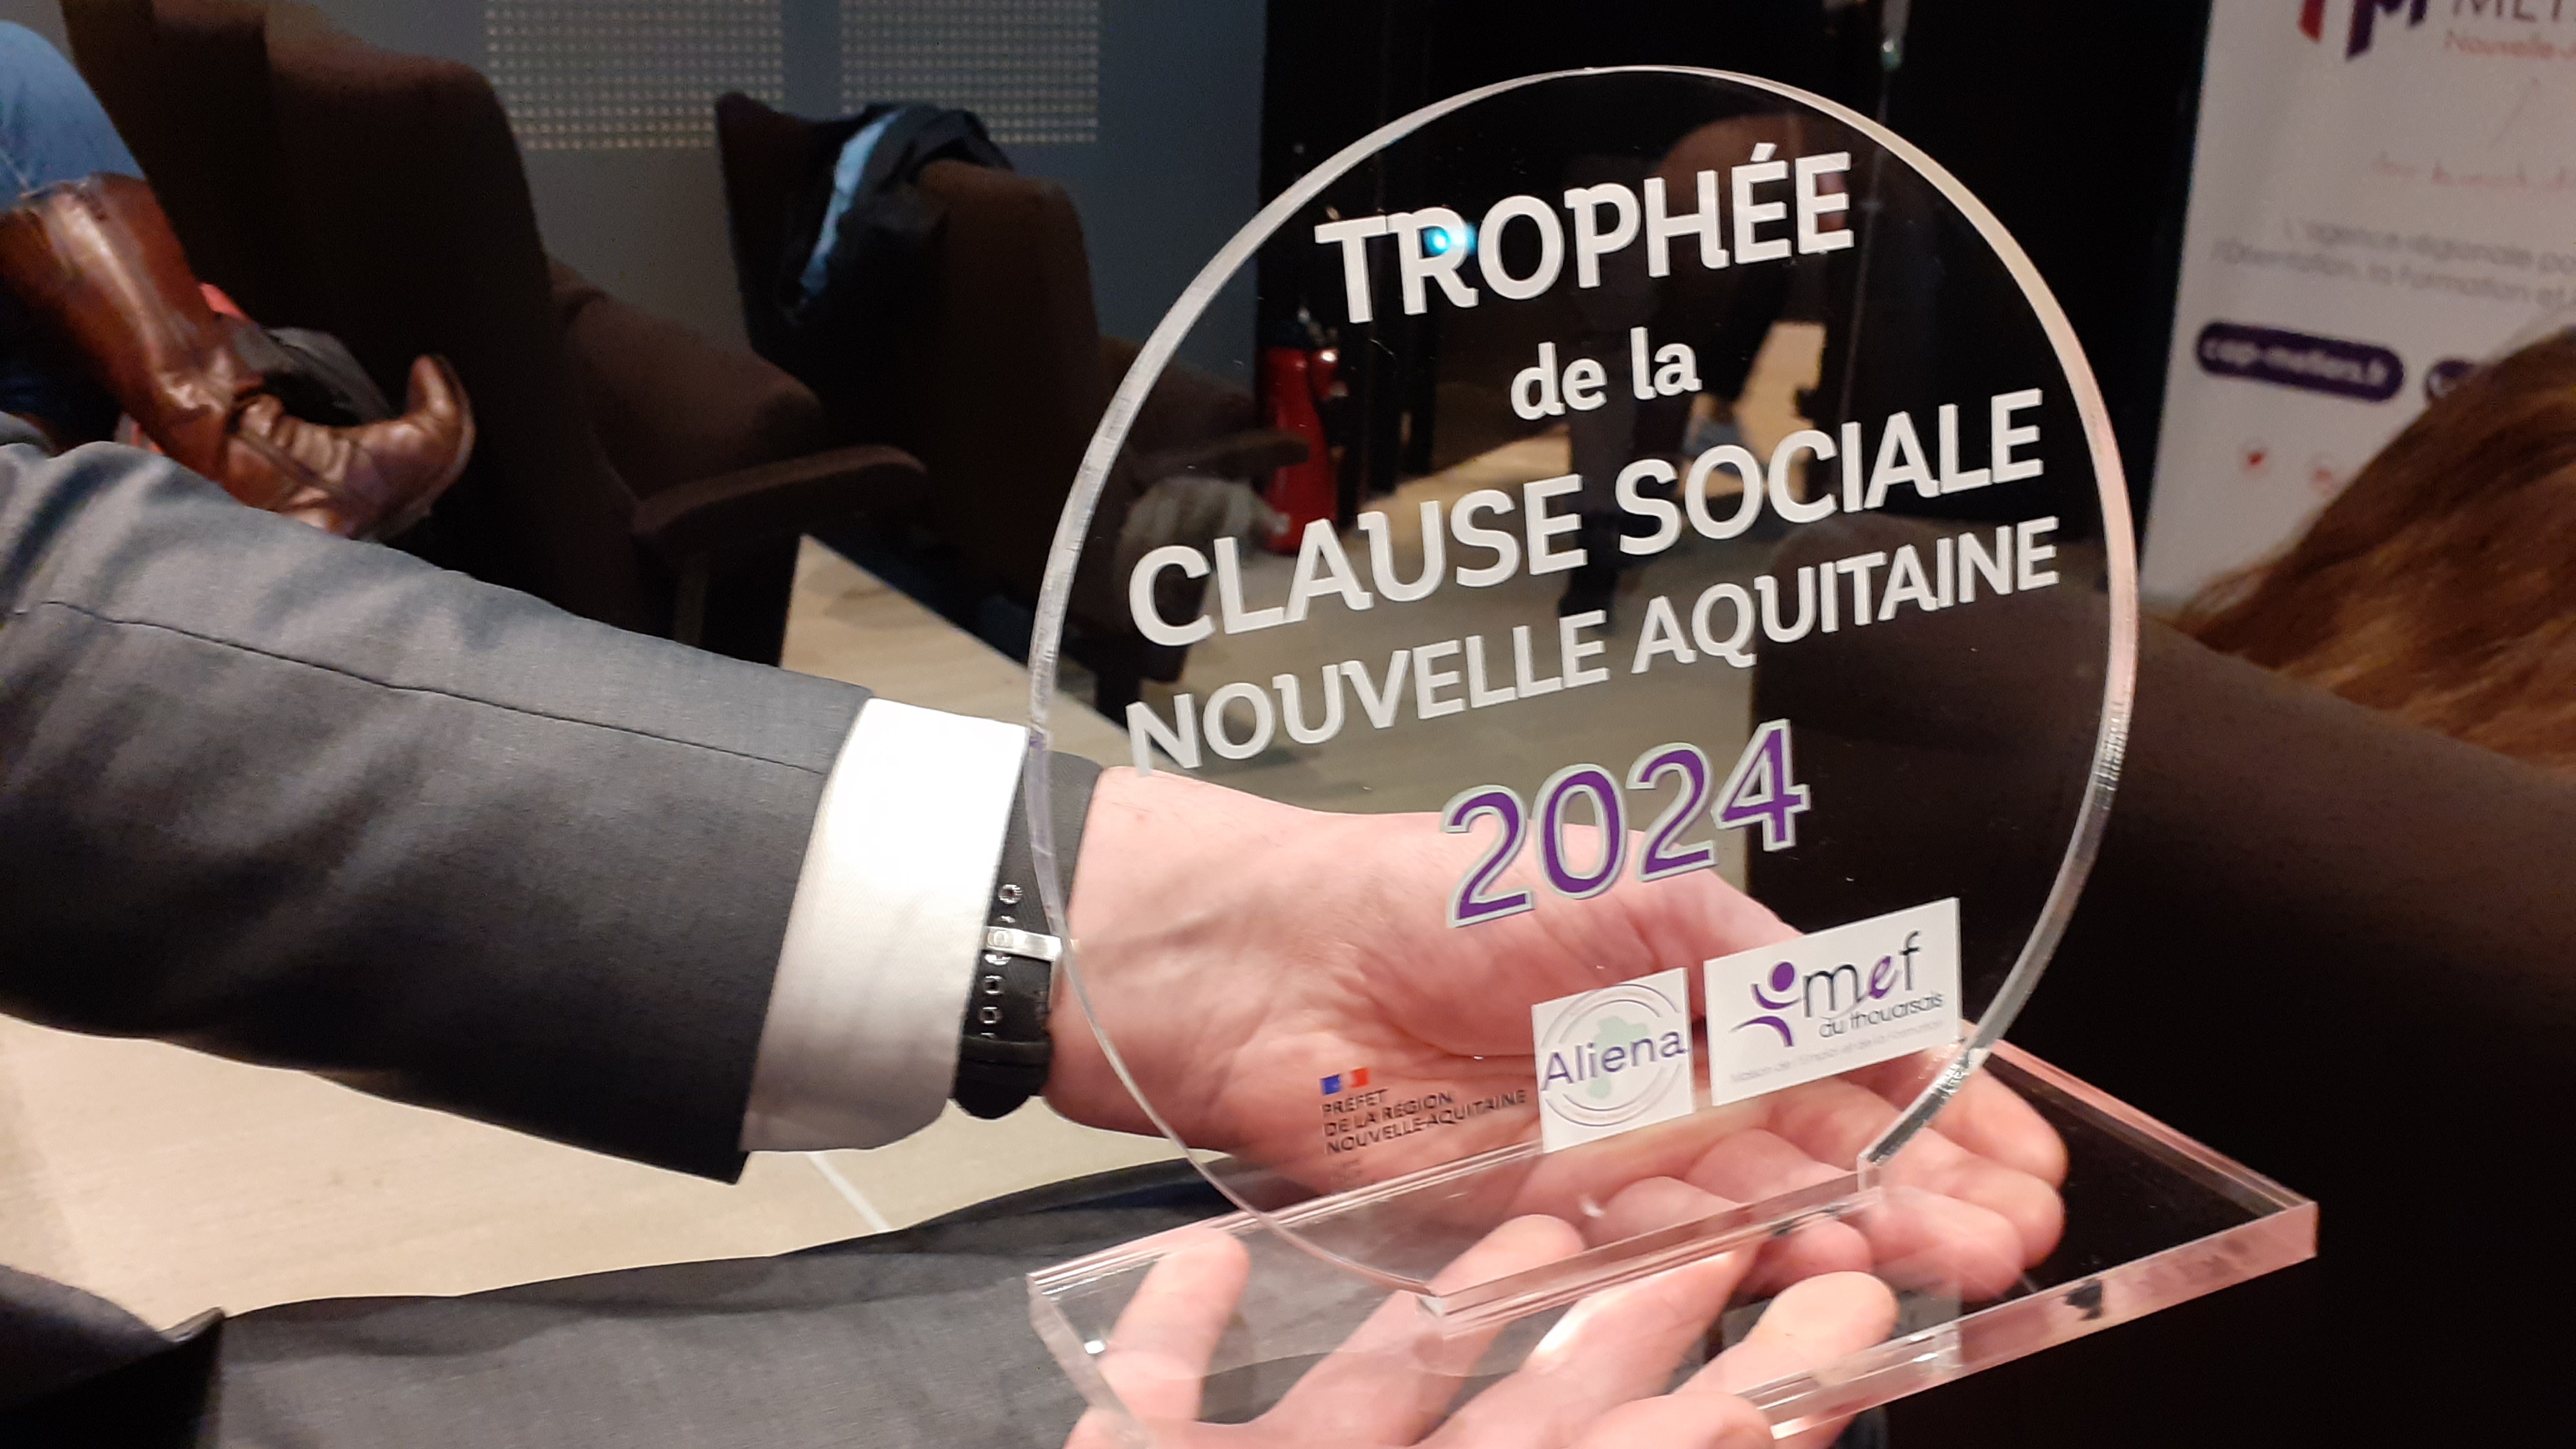 L'ASP, lauréate du trophée des clauses sociales de Nouvelle-Aquitaine dans la catégorie "Décideurs publics"